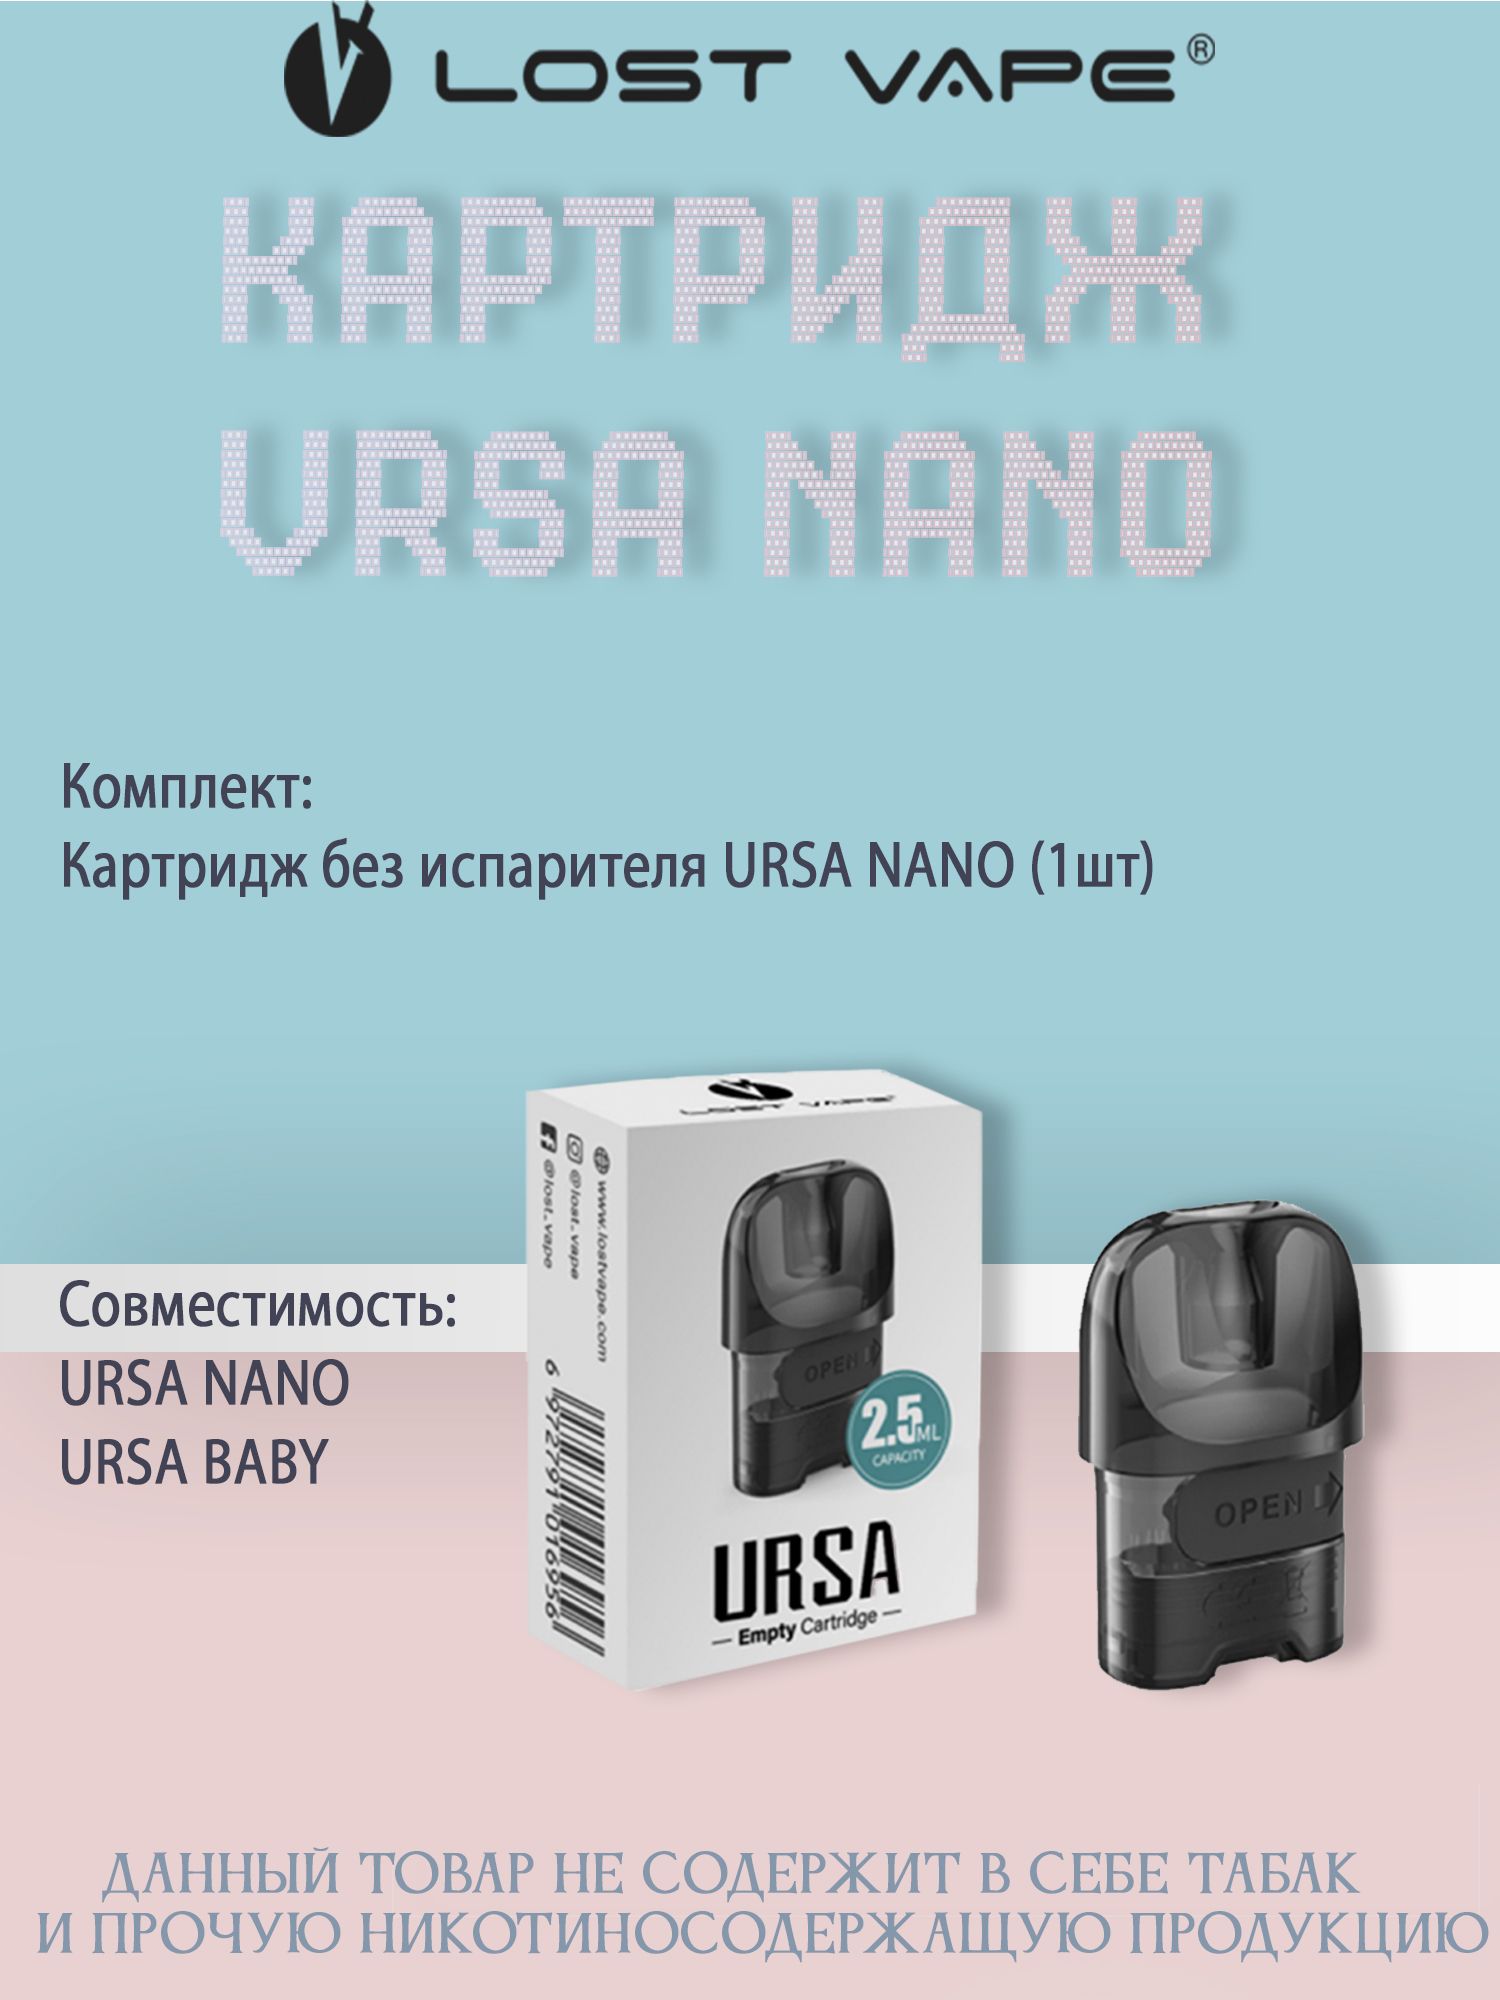 Ursa Nano Pro Купить В Новосибирске